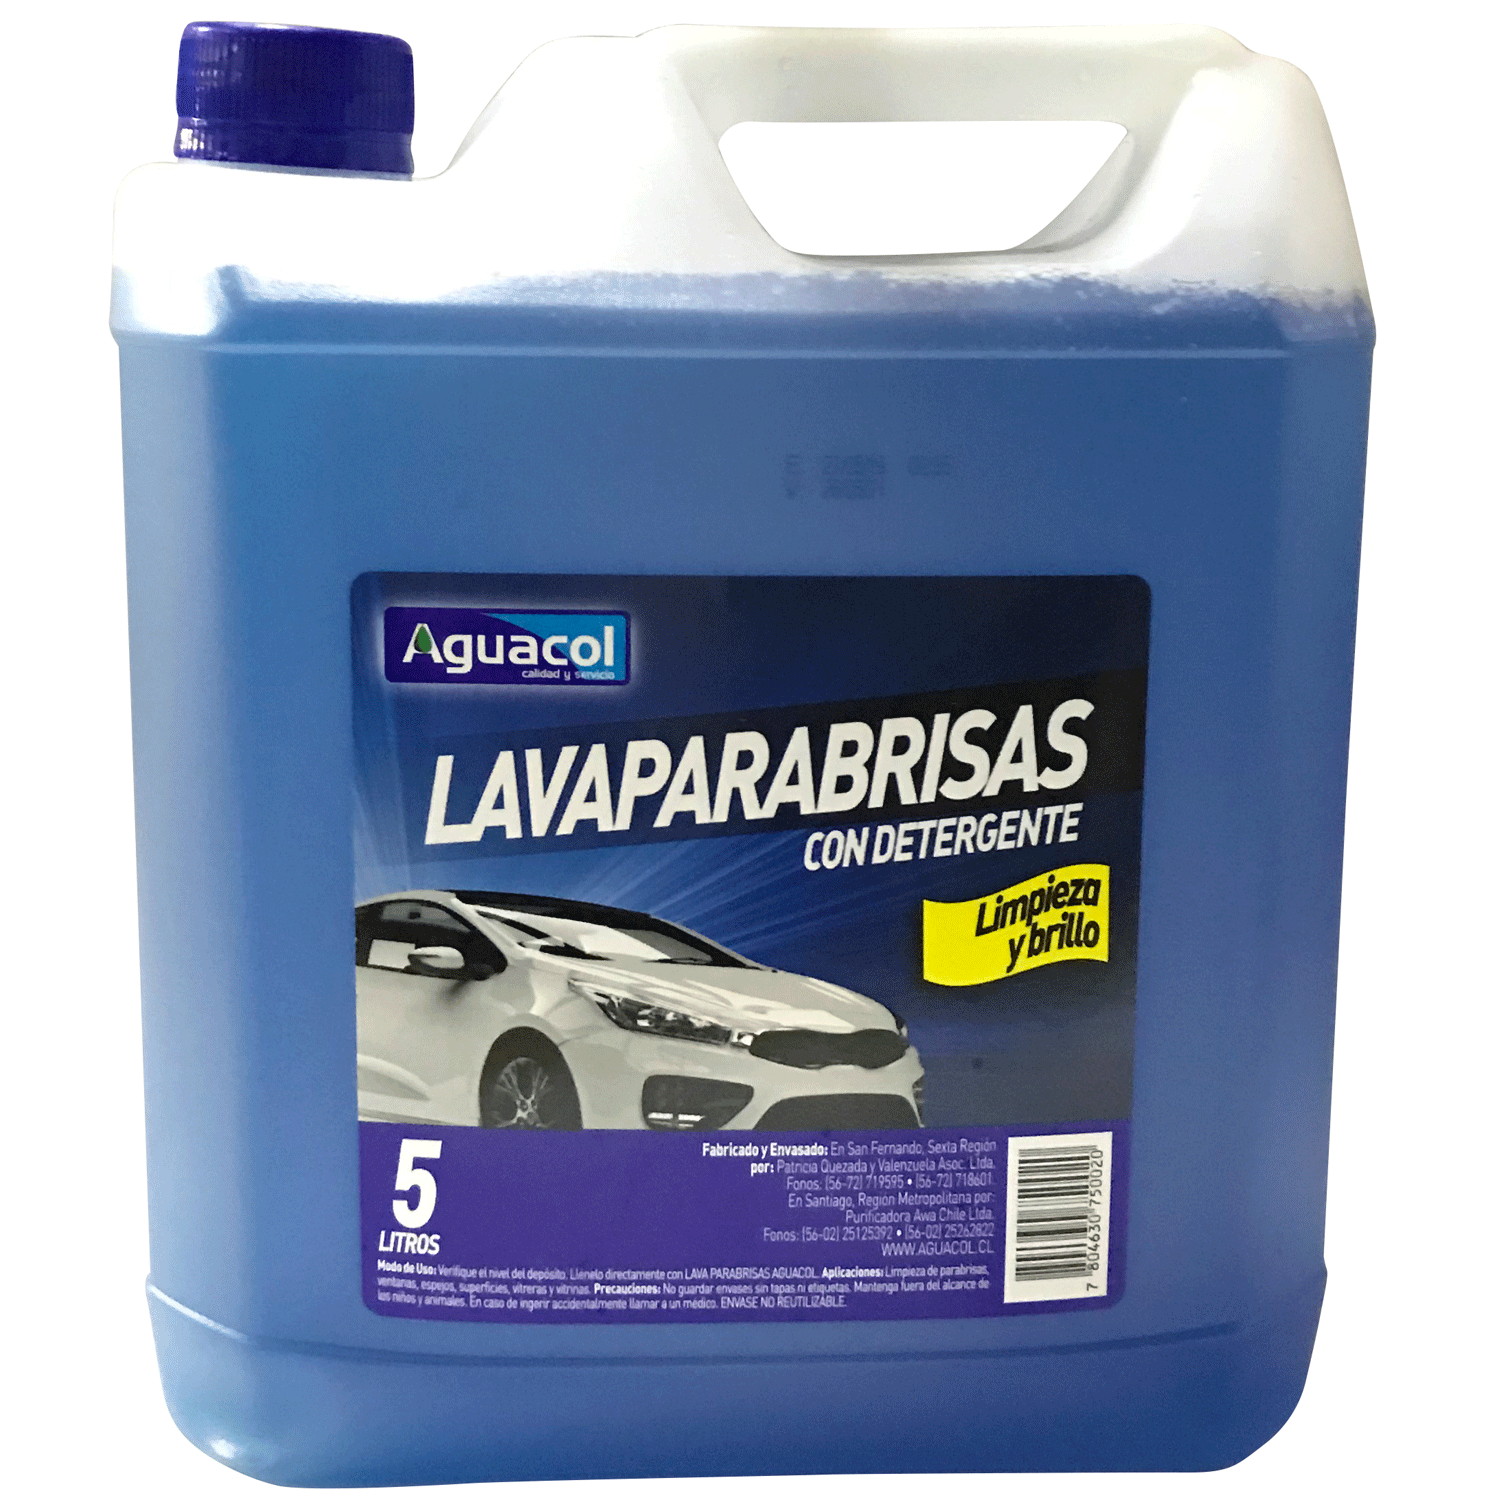 Tamar Lavaparabrisas, 5 litros